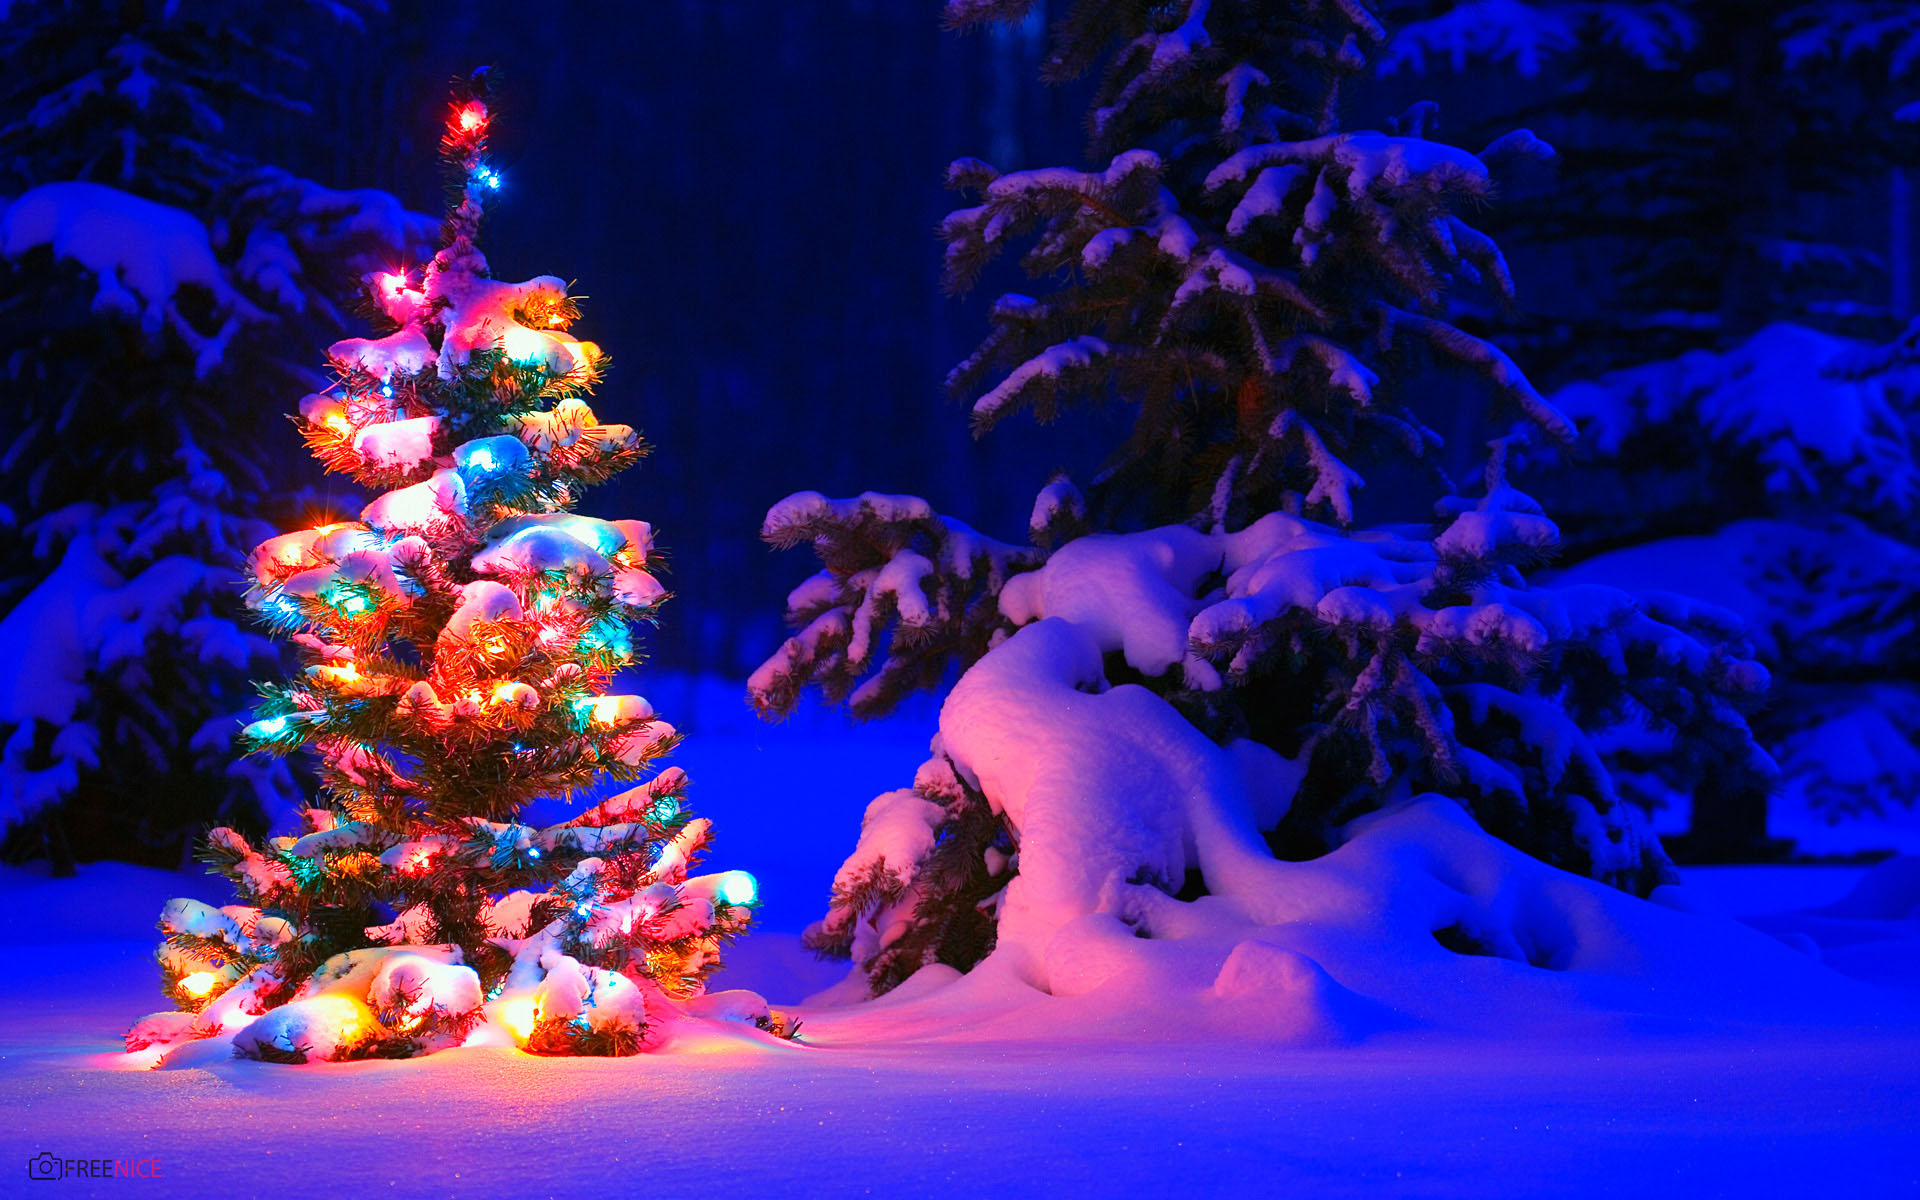 Hãy khám phá hình ảnh cây thông Noel lung linh, đầy màu sắc và ấm áp đang chờ đón bạn. Không có gì tuyệt vời hơn khi chiêm ngưỡng cây thông Noel tràn đầy cảm xúc trong ngày lễ cuối năm.